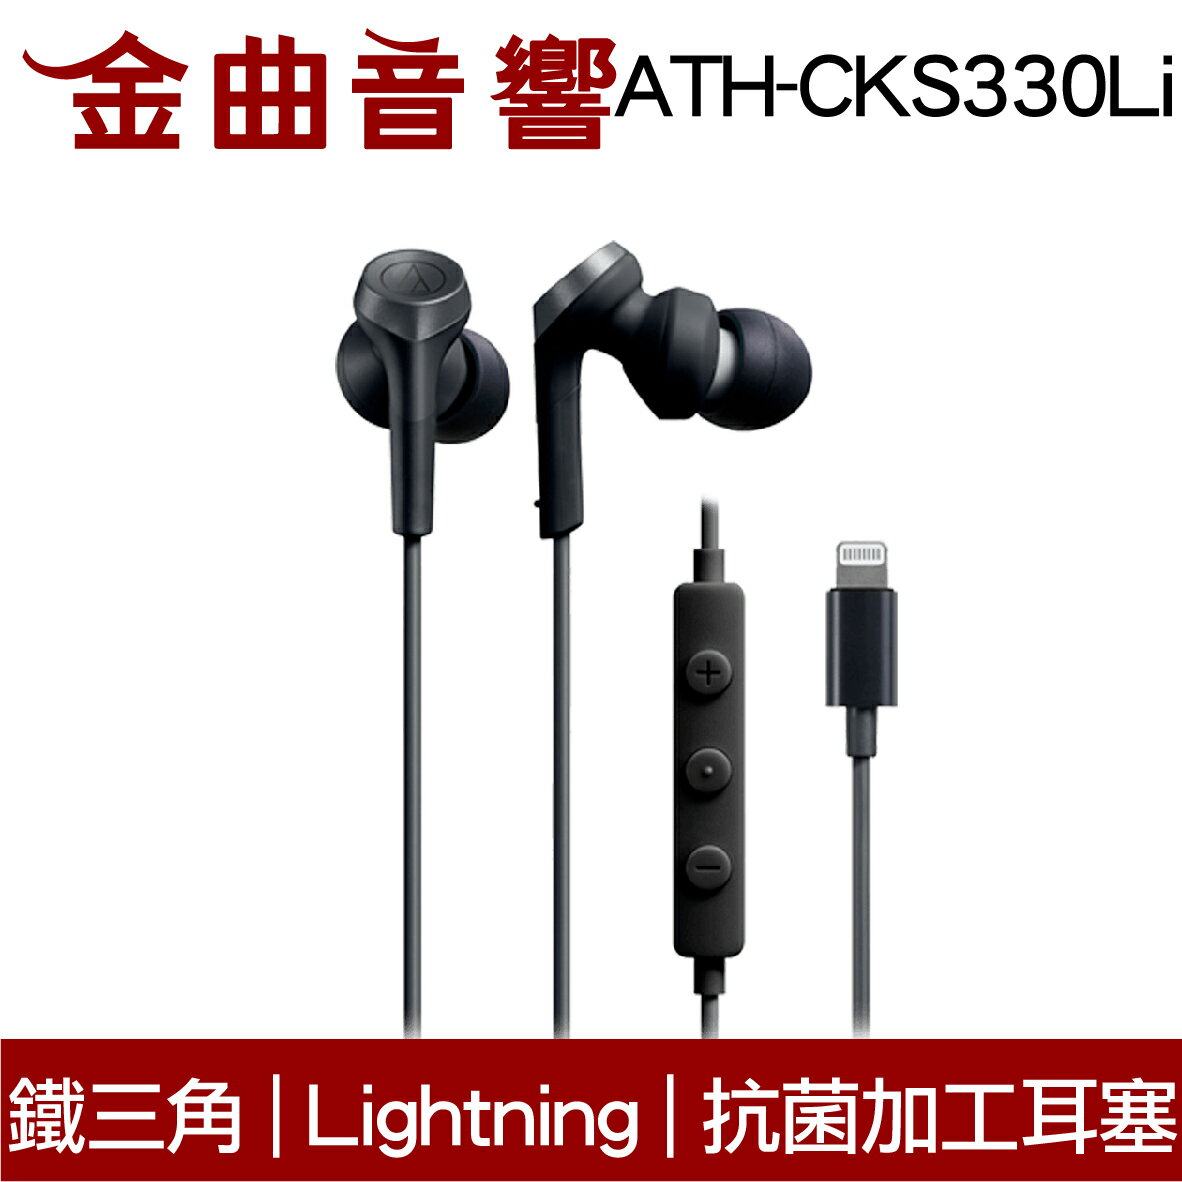 鐵三角 ATH-CKS330Li 黑色 抗菌加工耳塞 Lightning端子 重低音 耳塞式 耳機 | 金曲音響